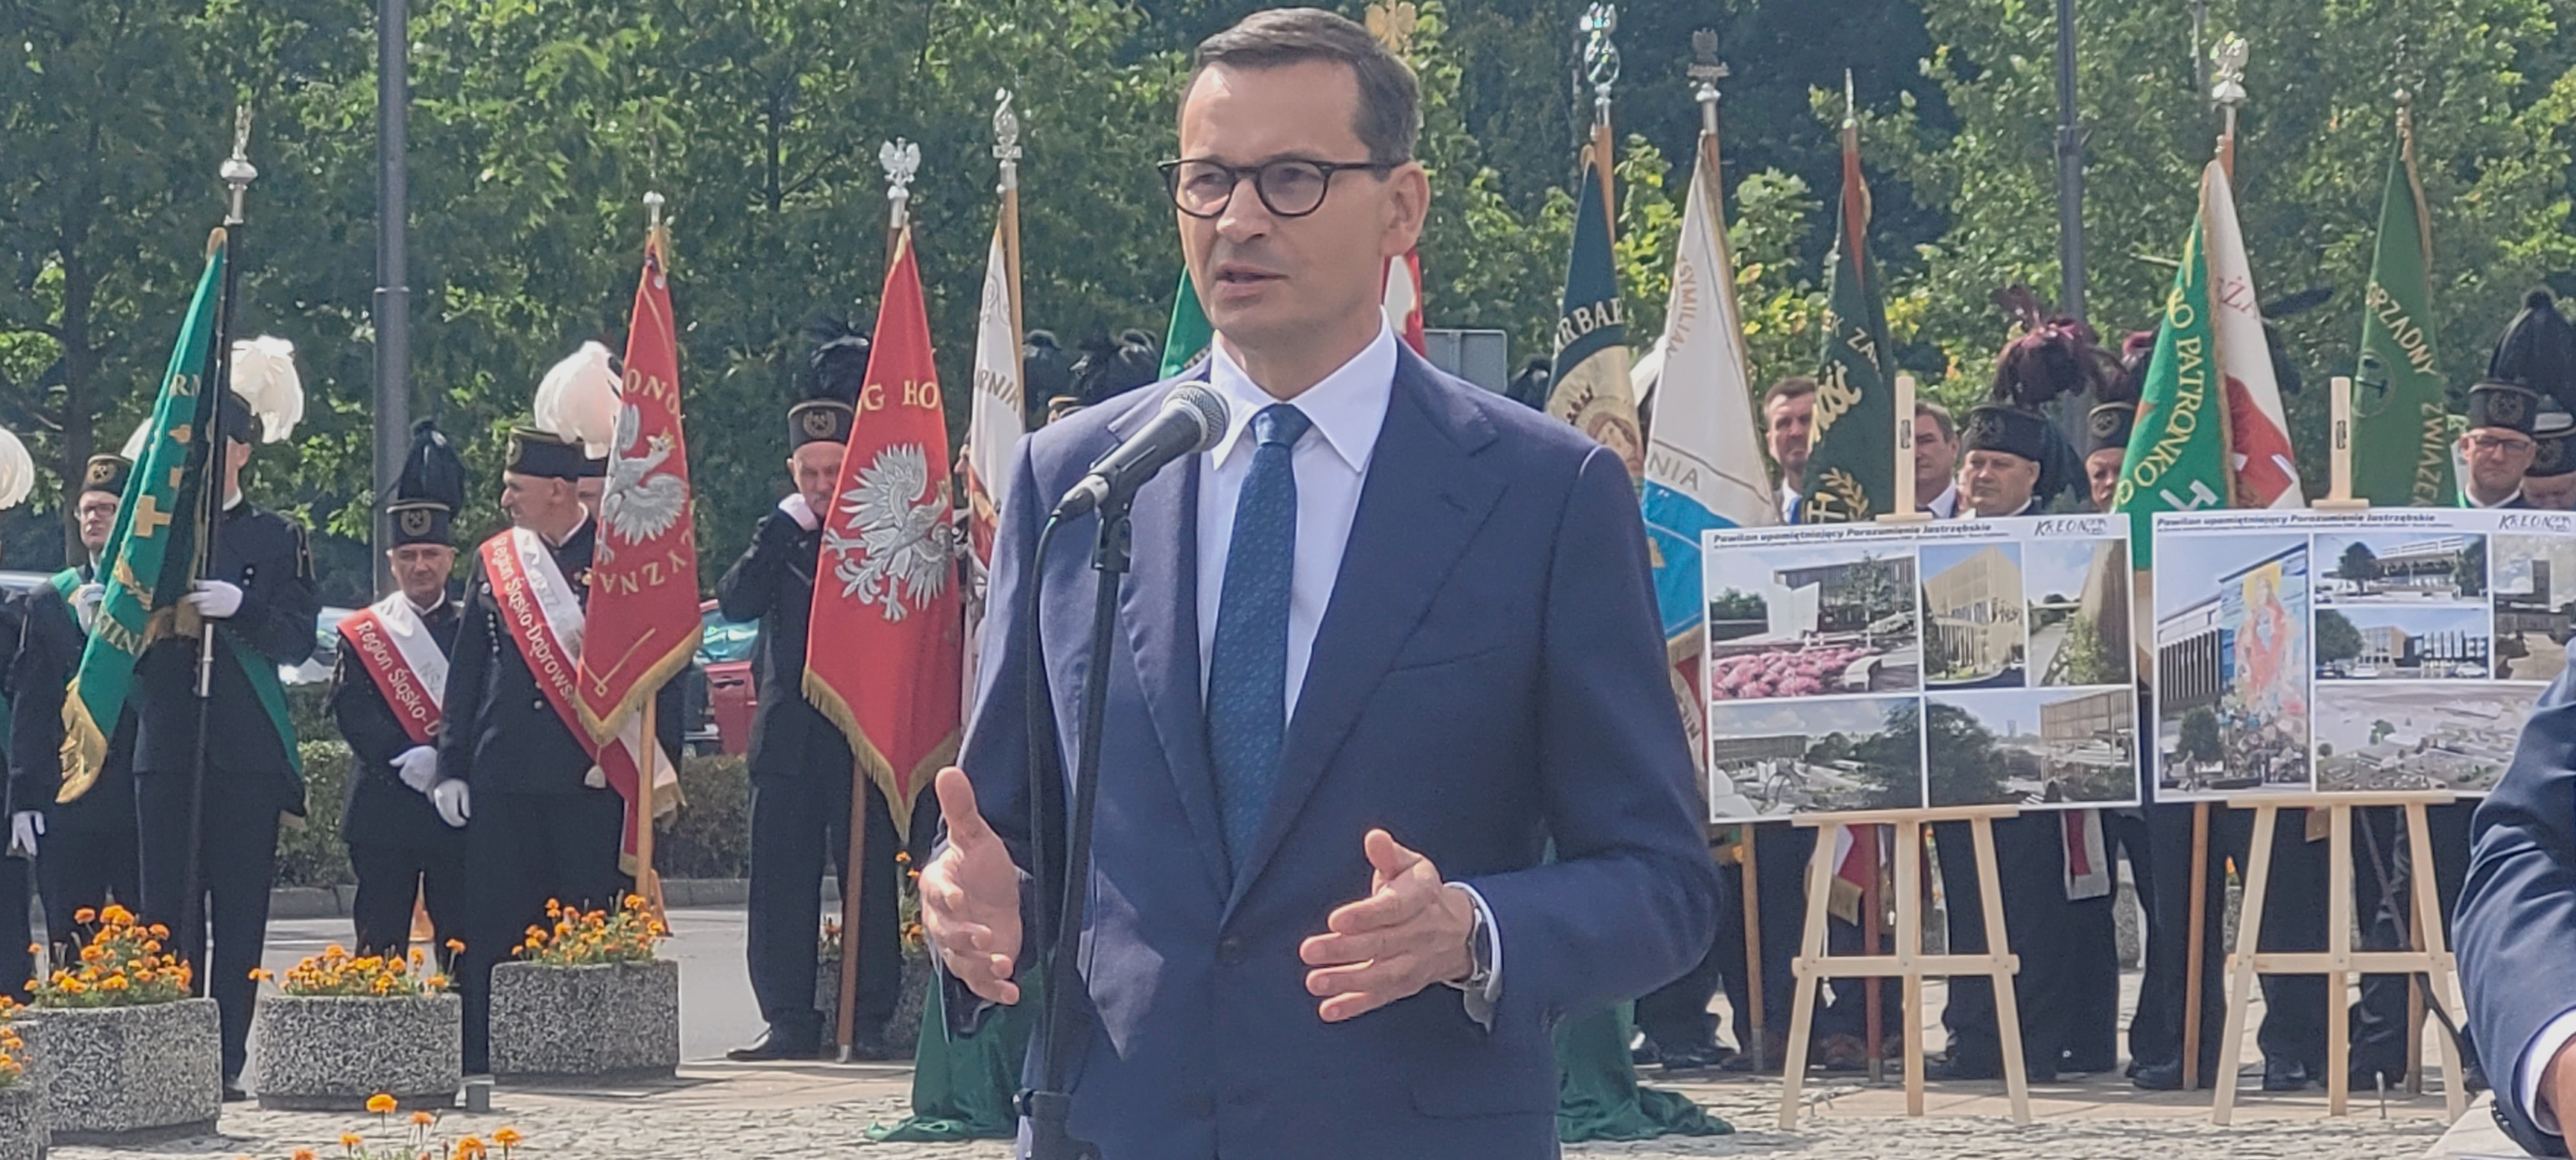 Mateusz Morawiecki przybył do Jastrzębia-Zdroju. Fot. nph